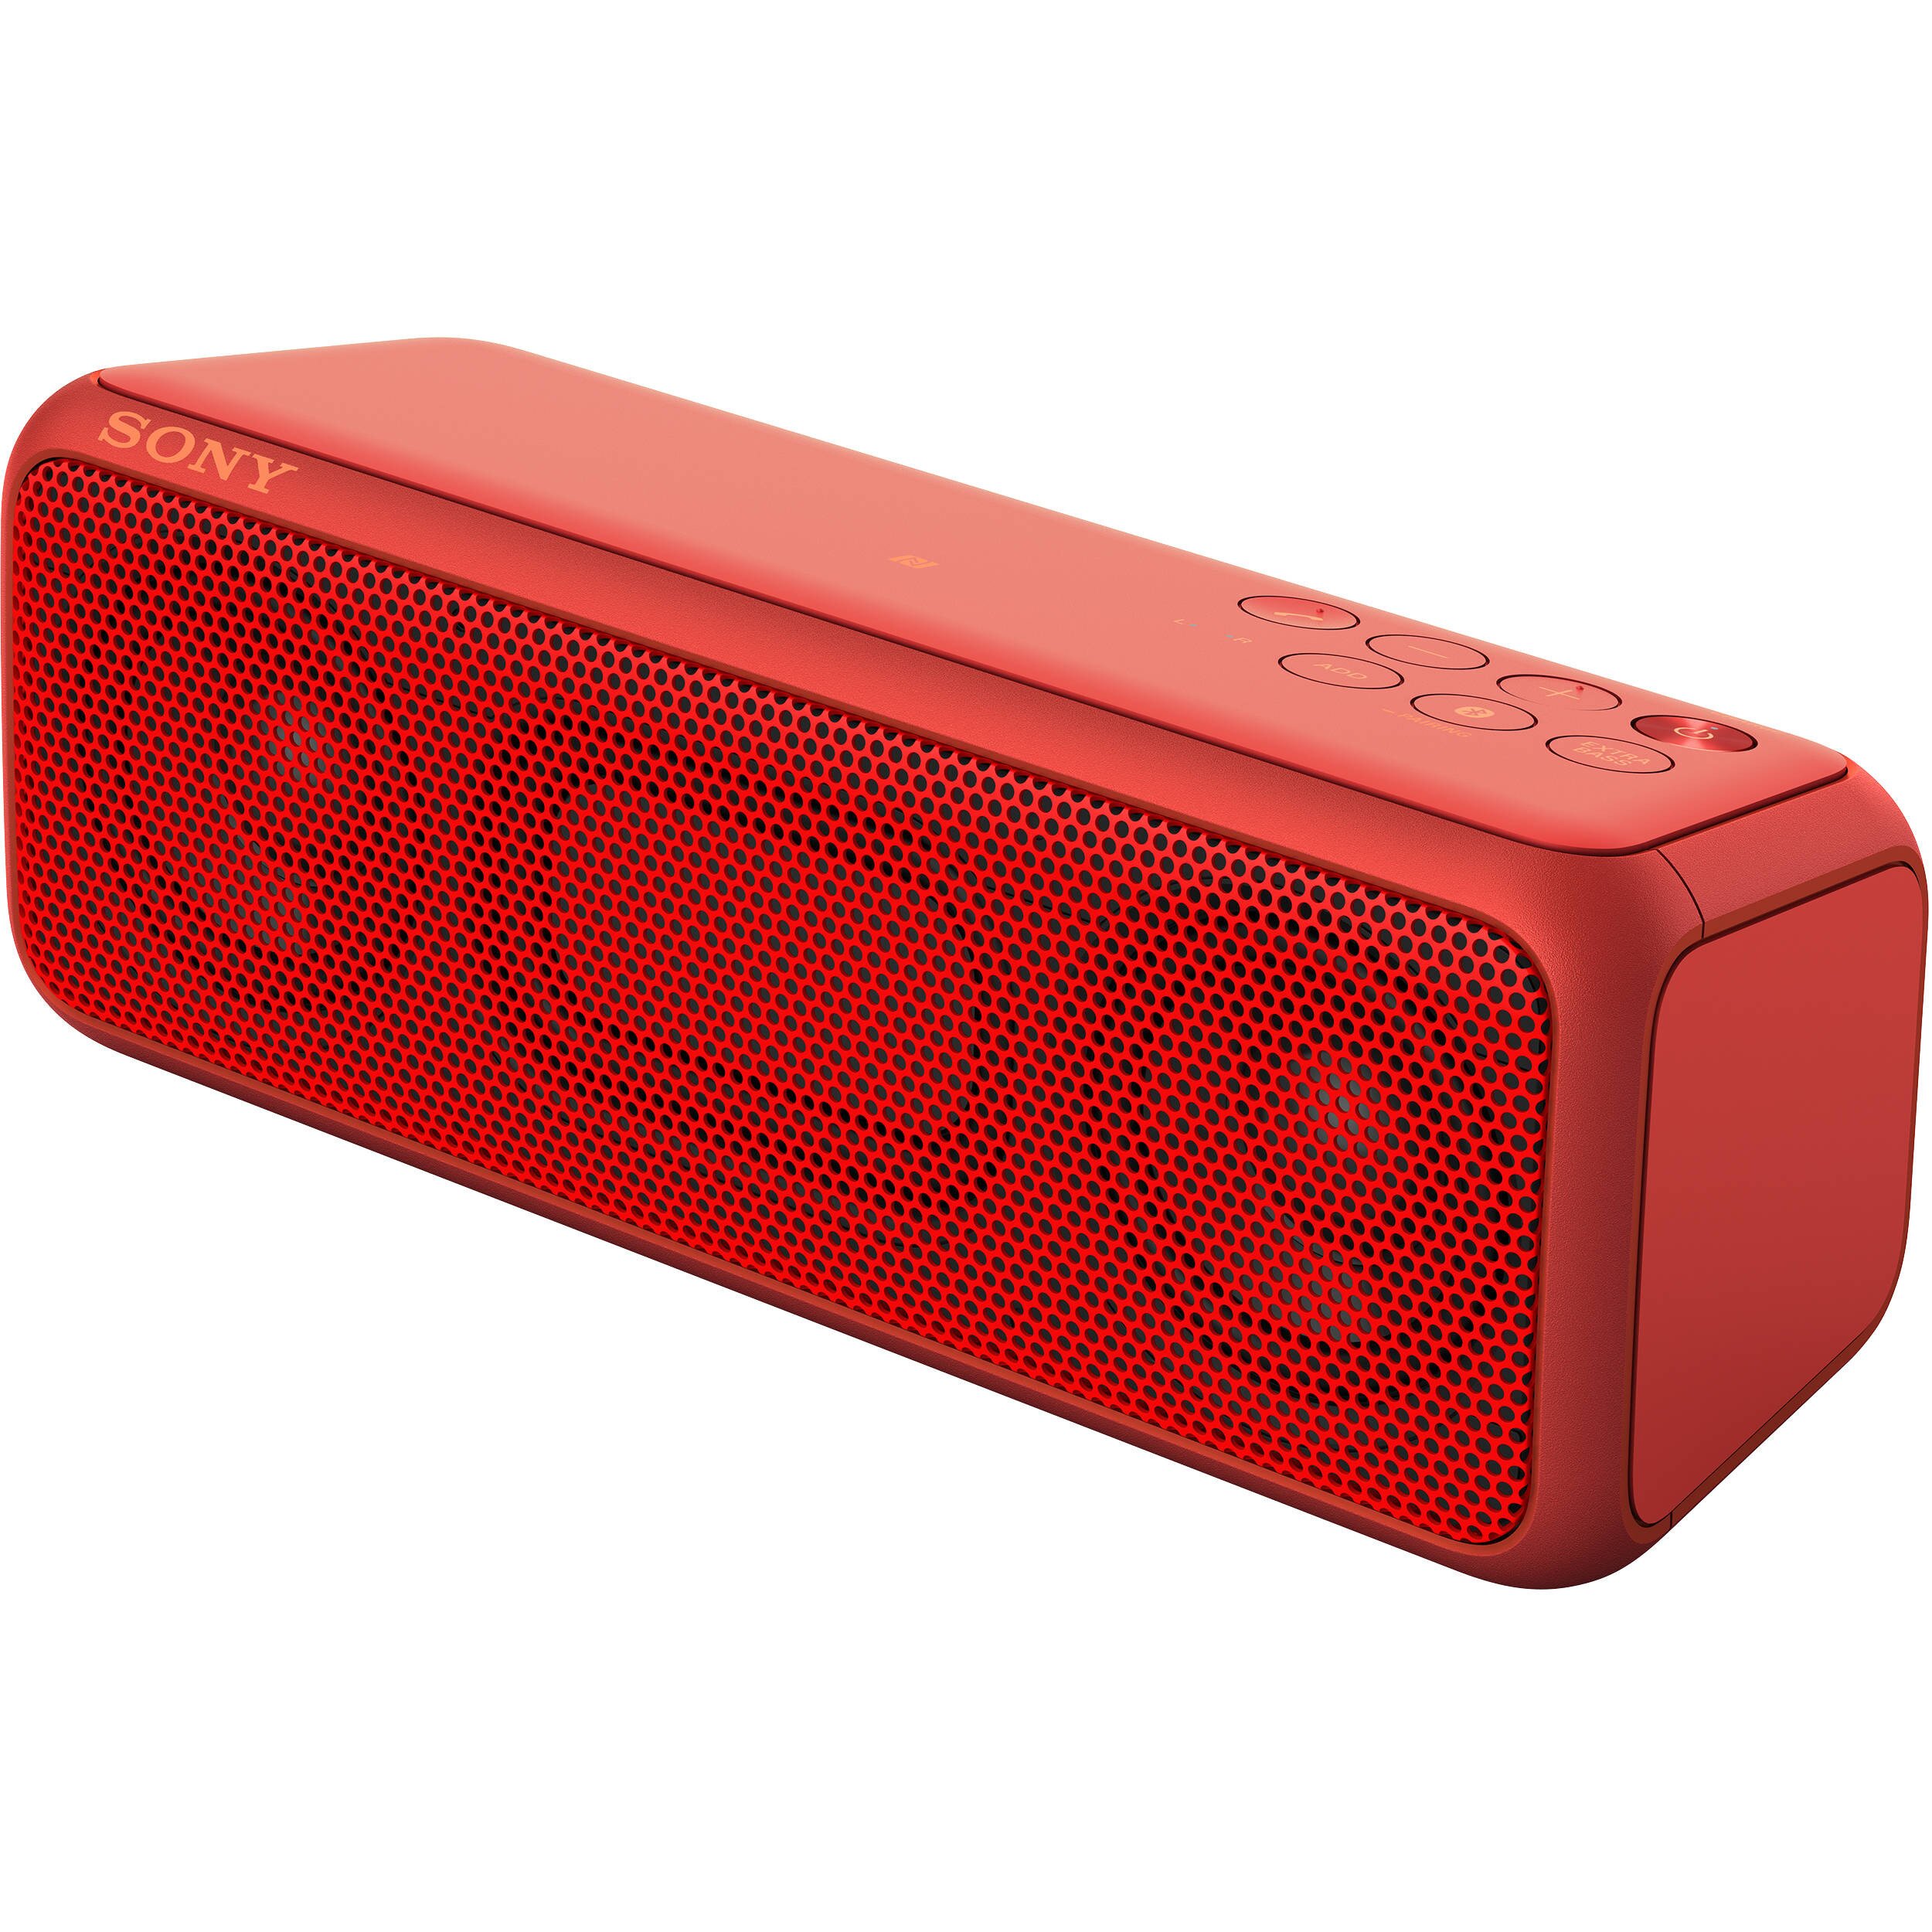 Buy Sony Portable Wireless BLUETOOTH Speaker - SRS-XB3 online in